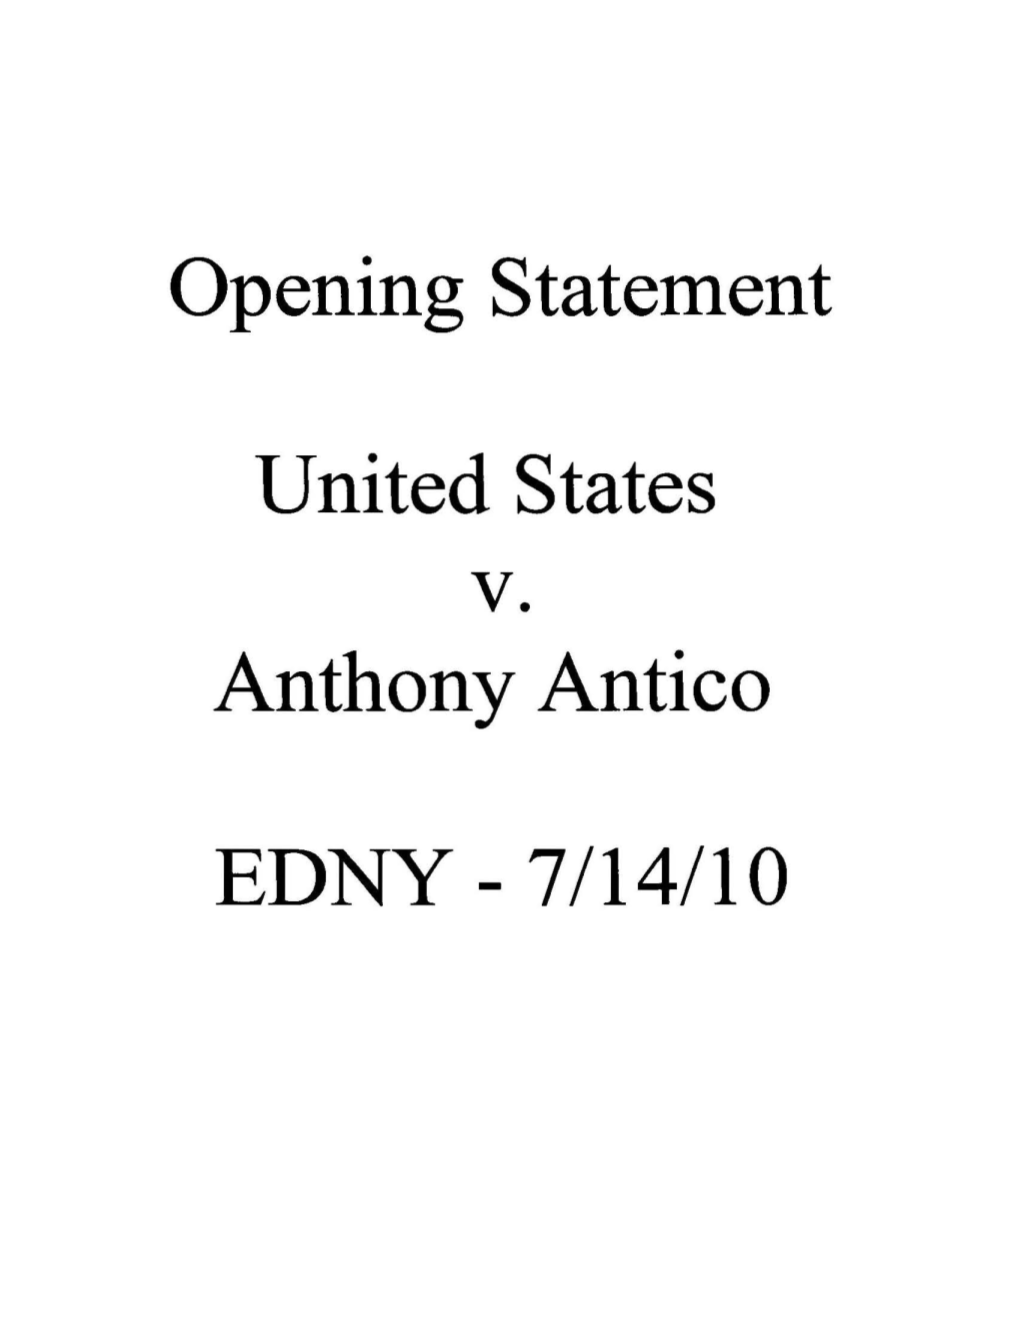 Opening Statement United States V. Anthony Antico EDNY